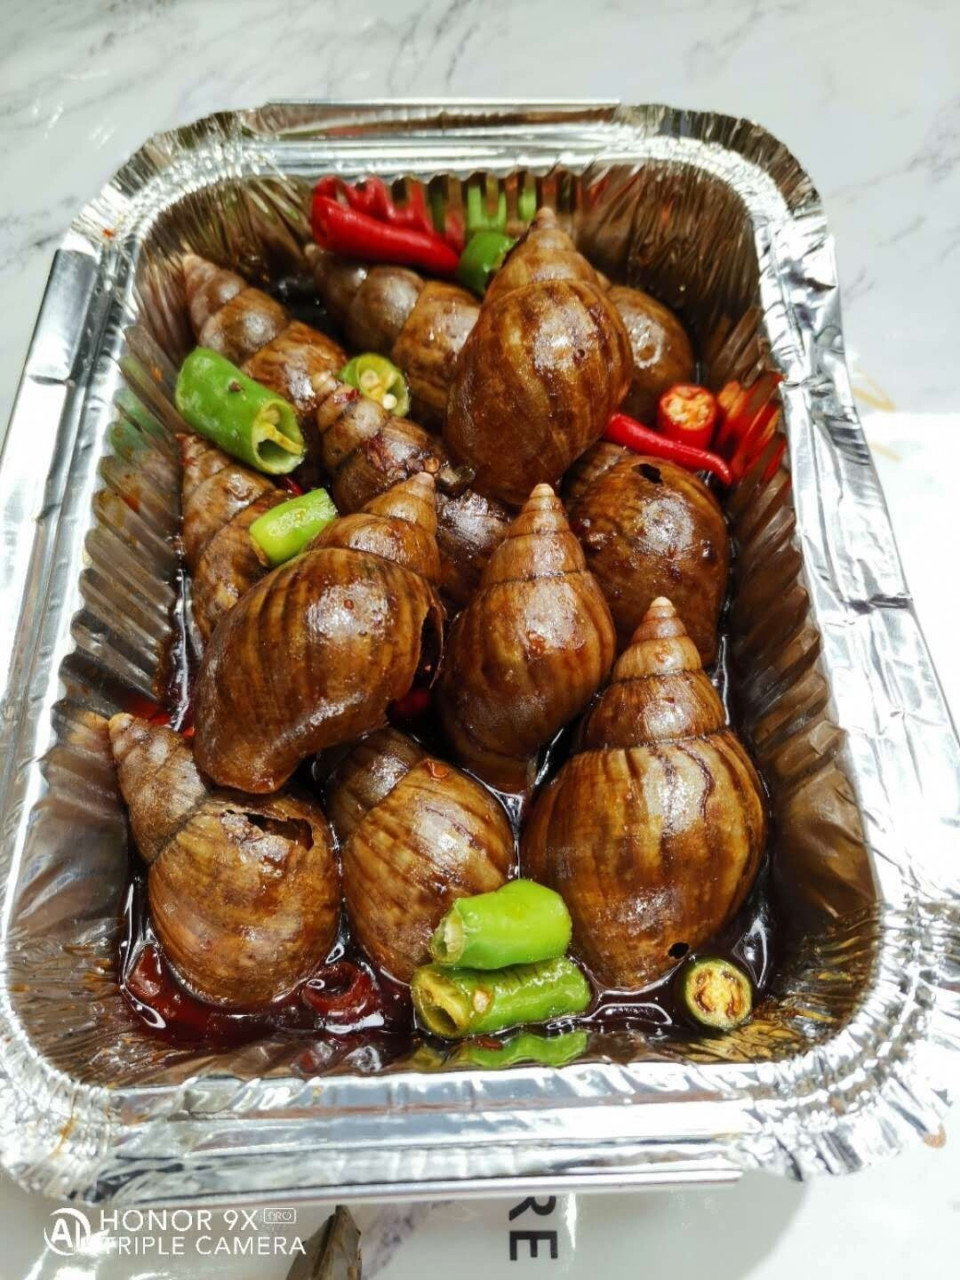 白玉蜗牛美食烹饪系列:烤蜗牛肉